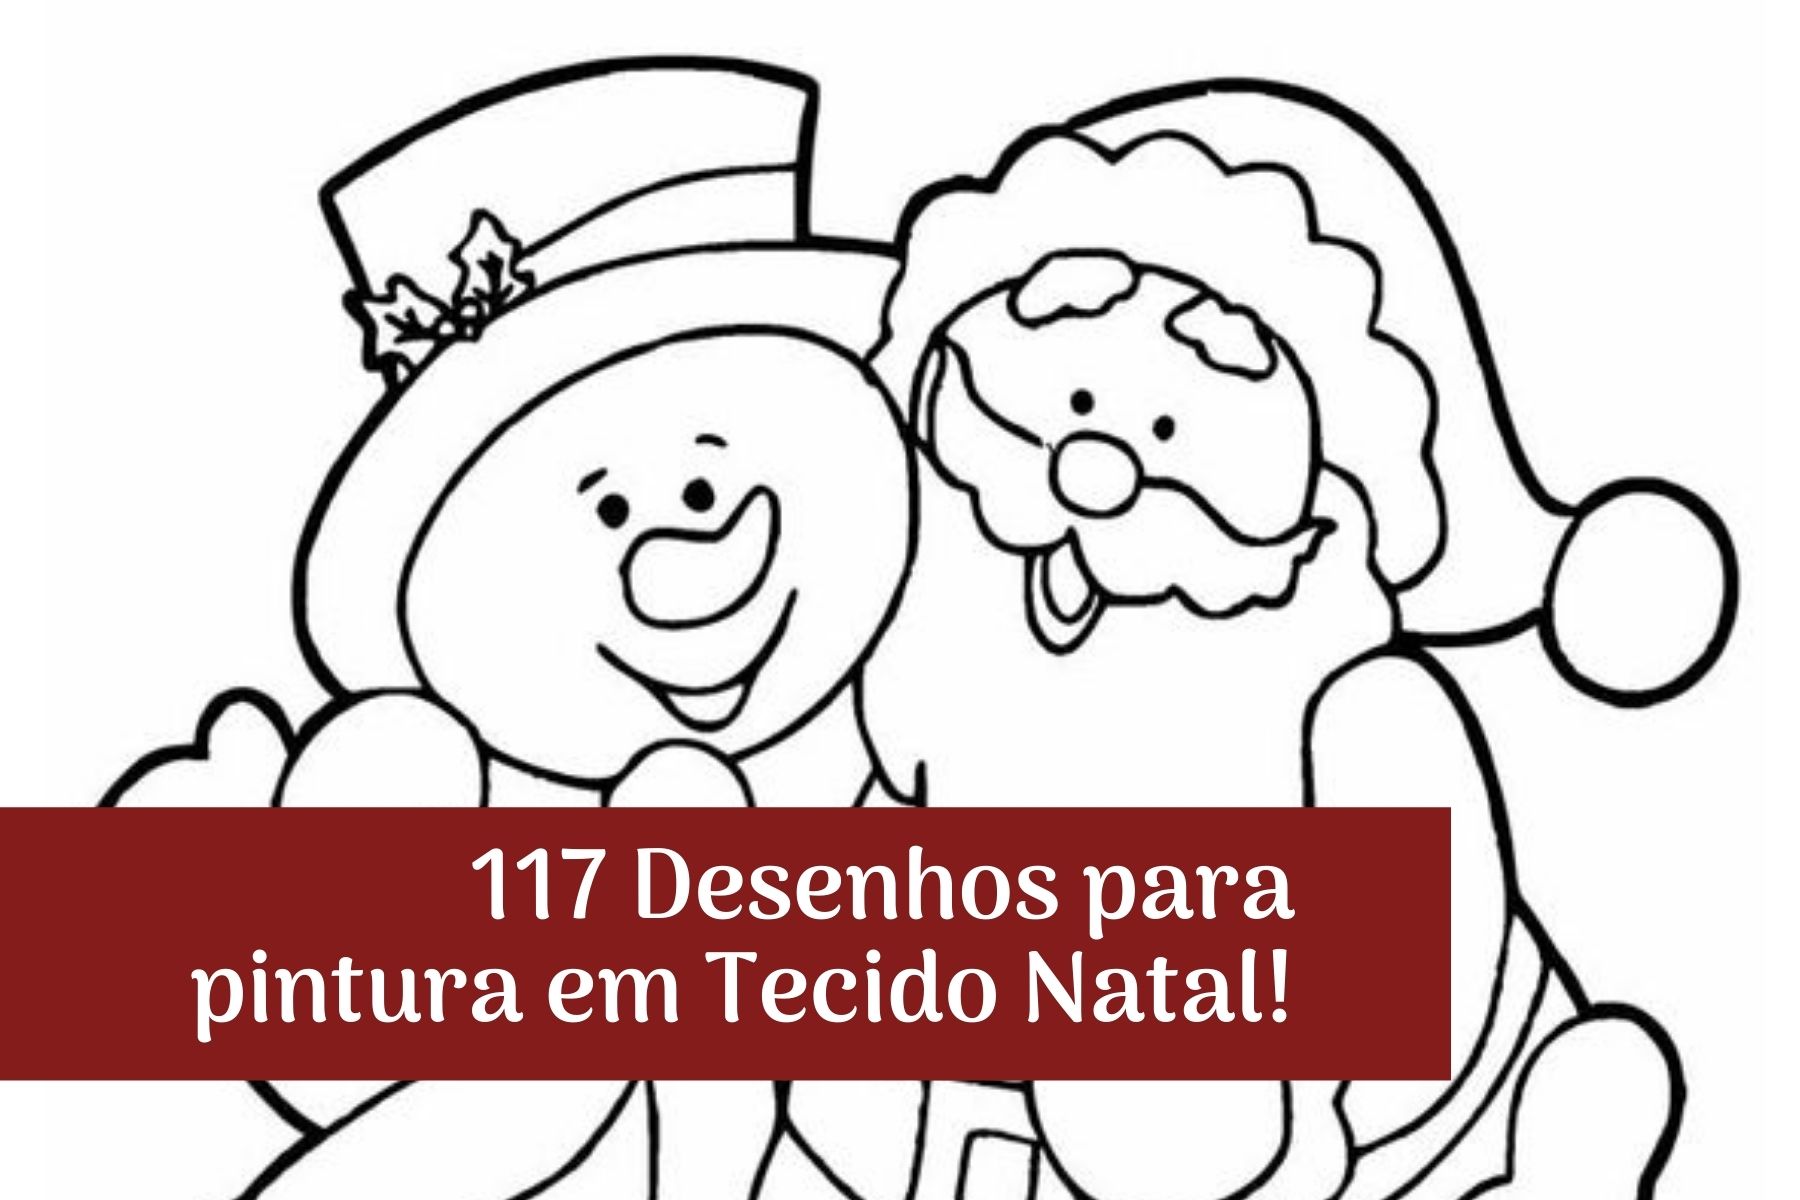 117 Desenhos para pintura em Tecido Natal! - Portal do Artesanato